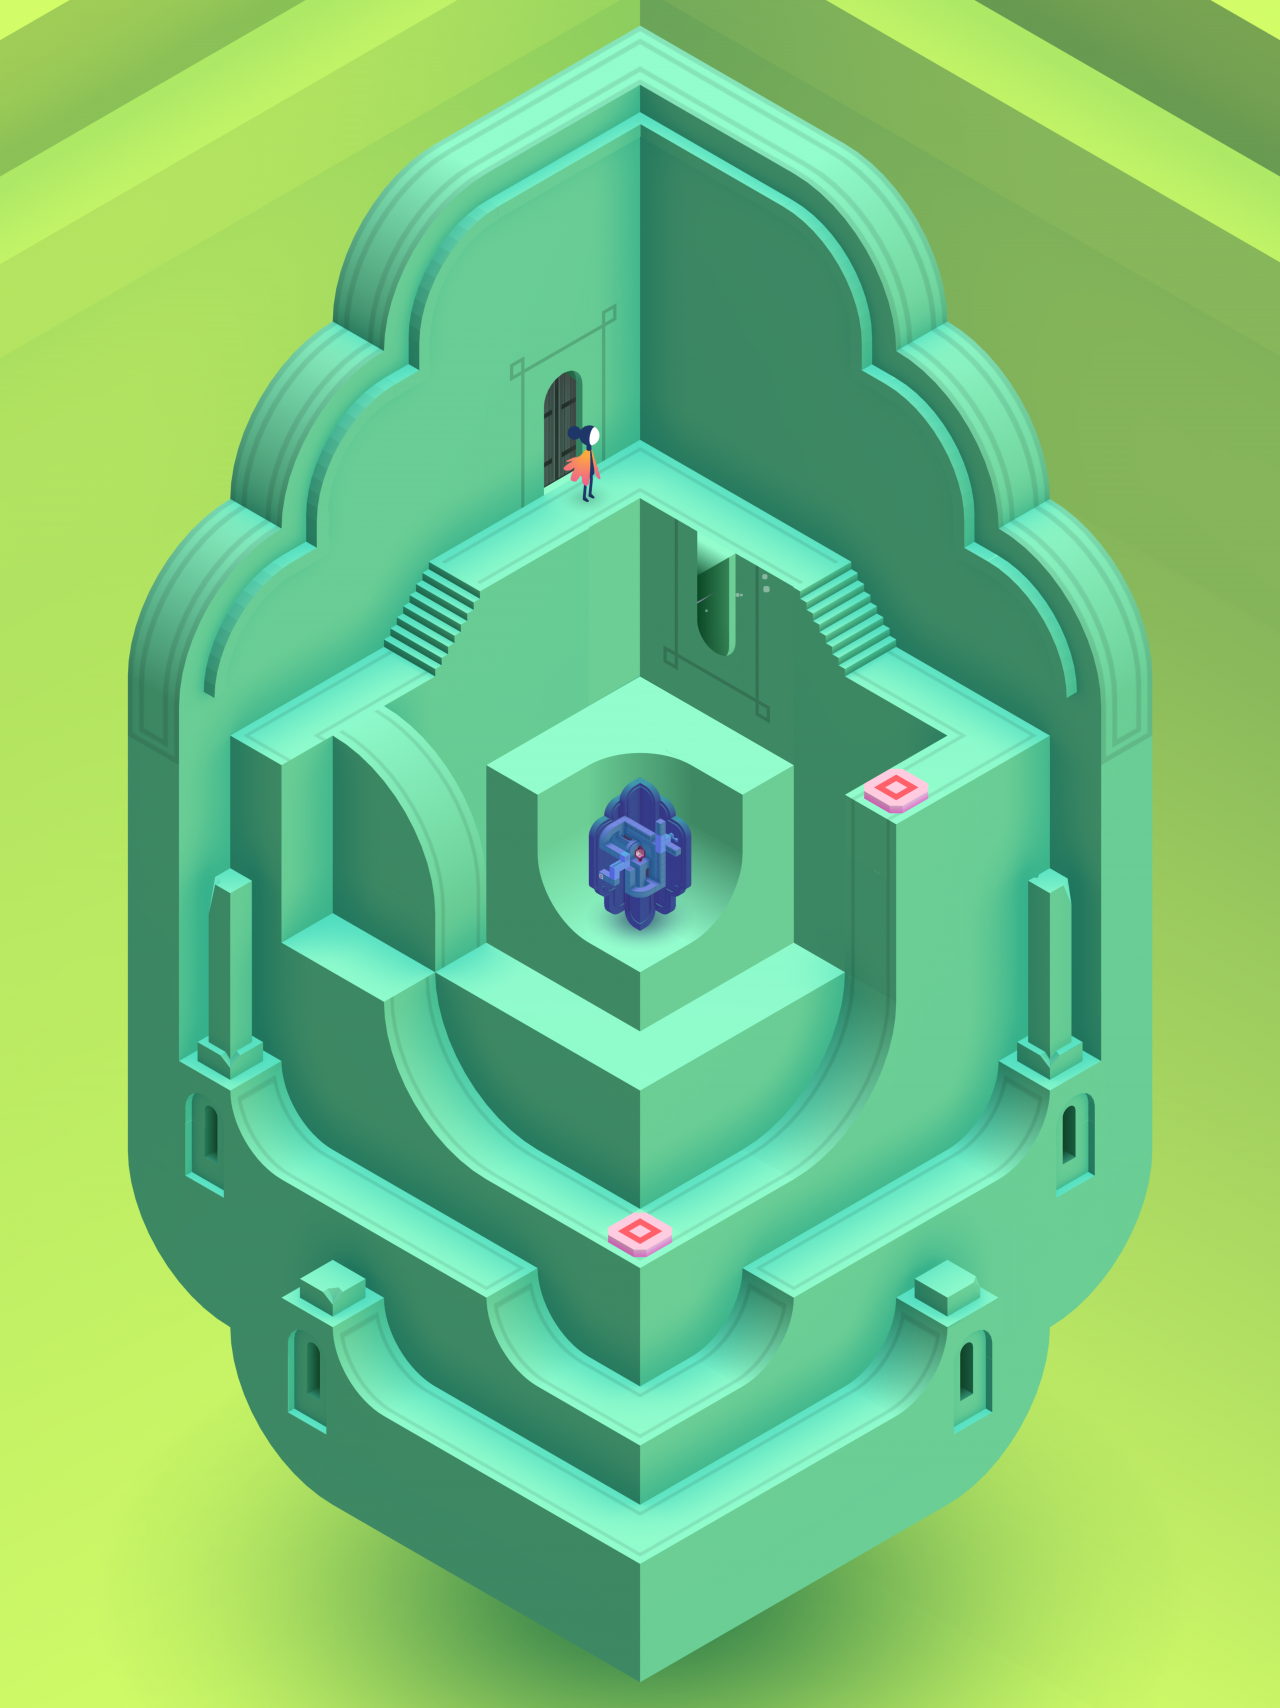 Darstellung eines grünen Labyrinths mit einer Figur